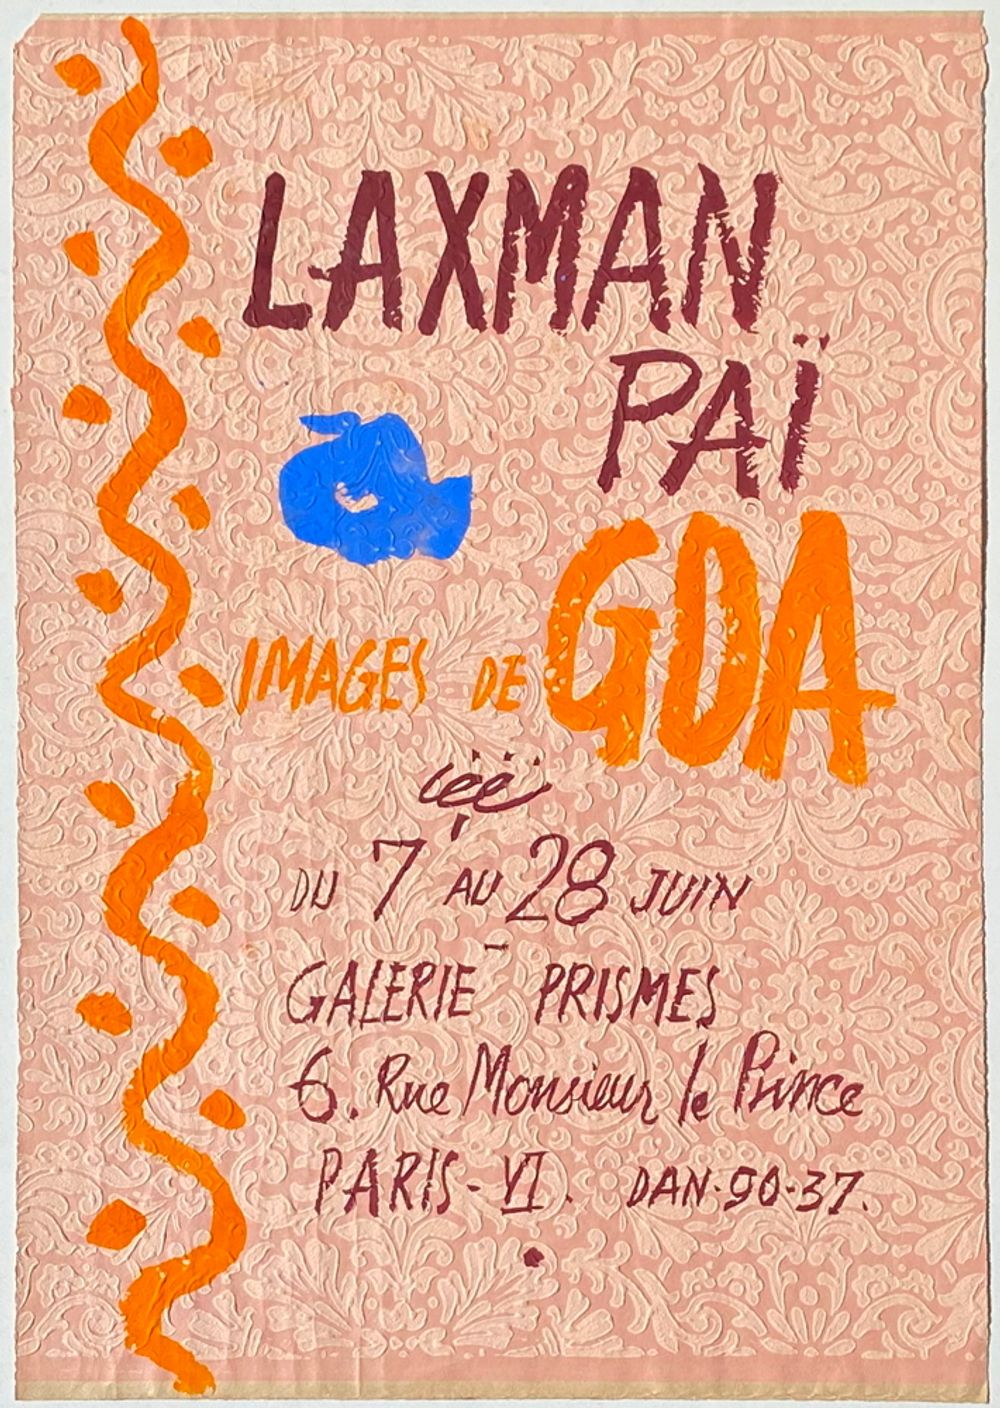 Expo 56 - Galerie Prismes - Images de Goa